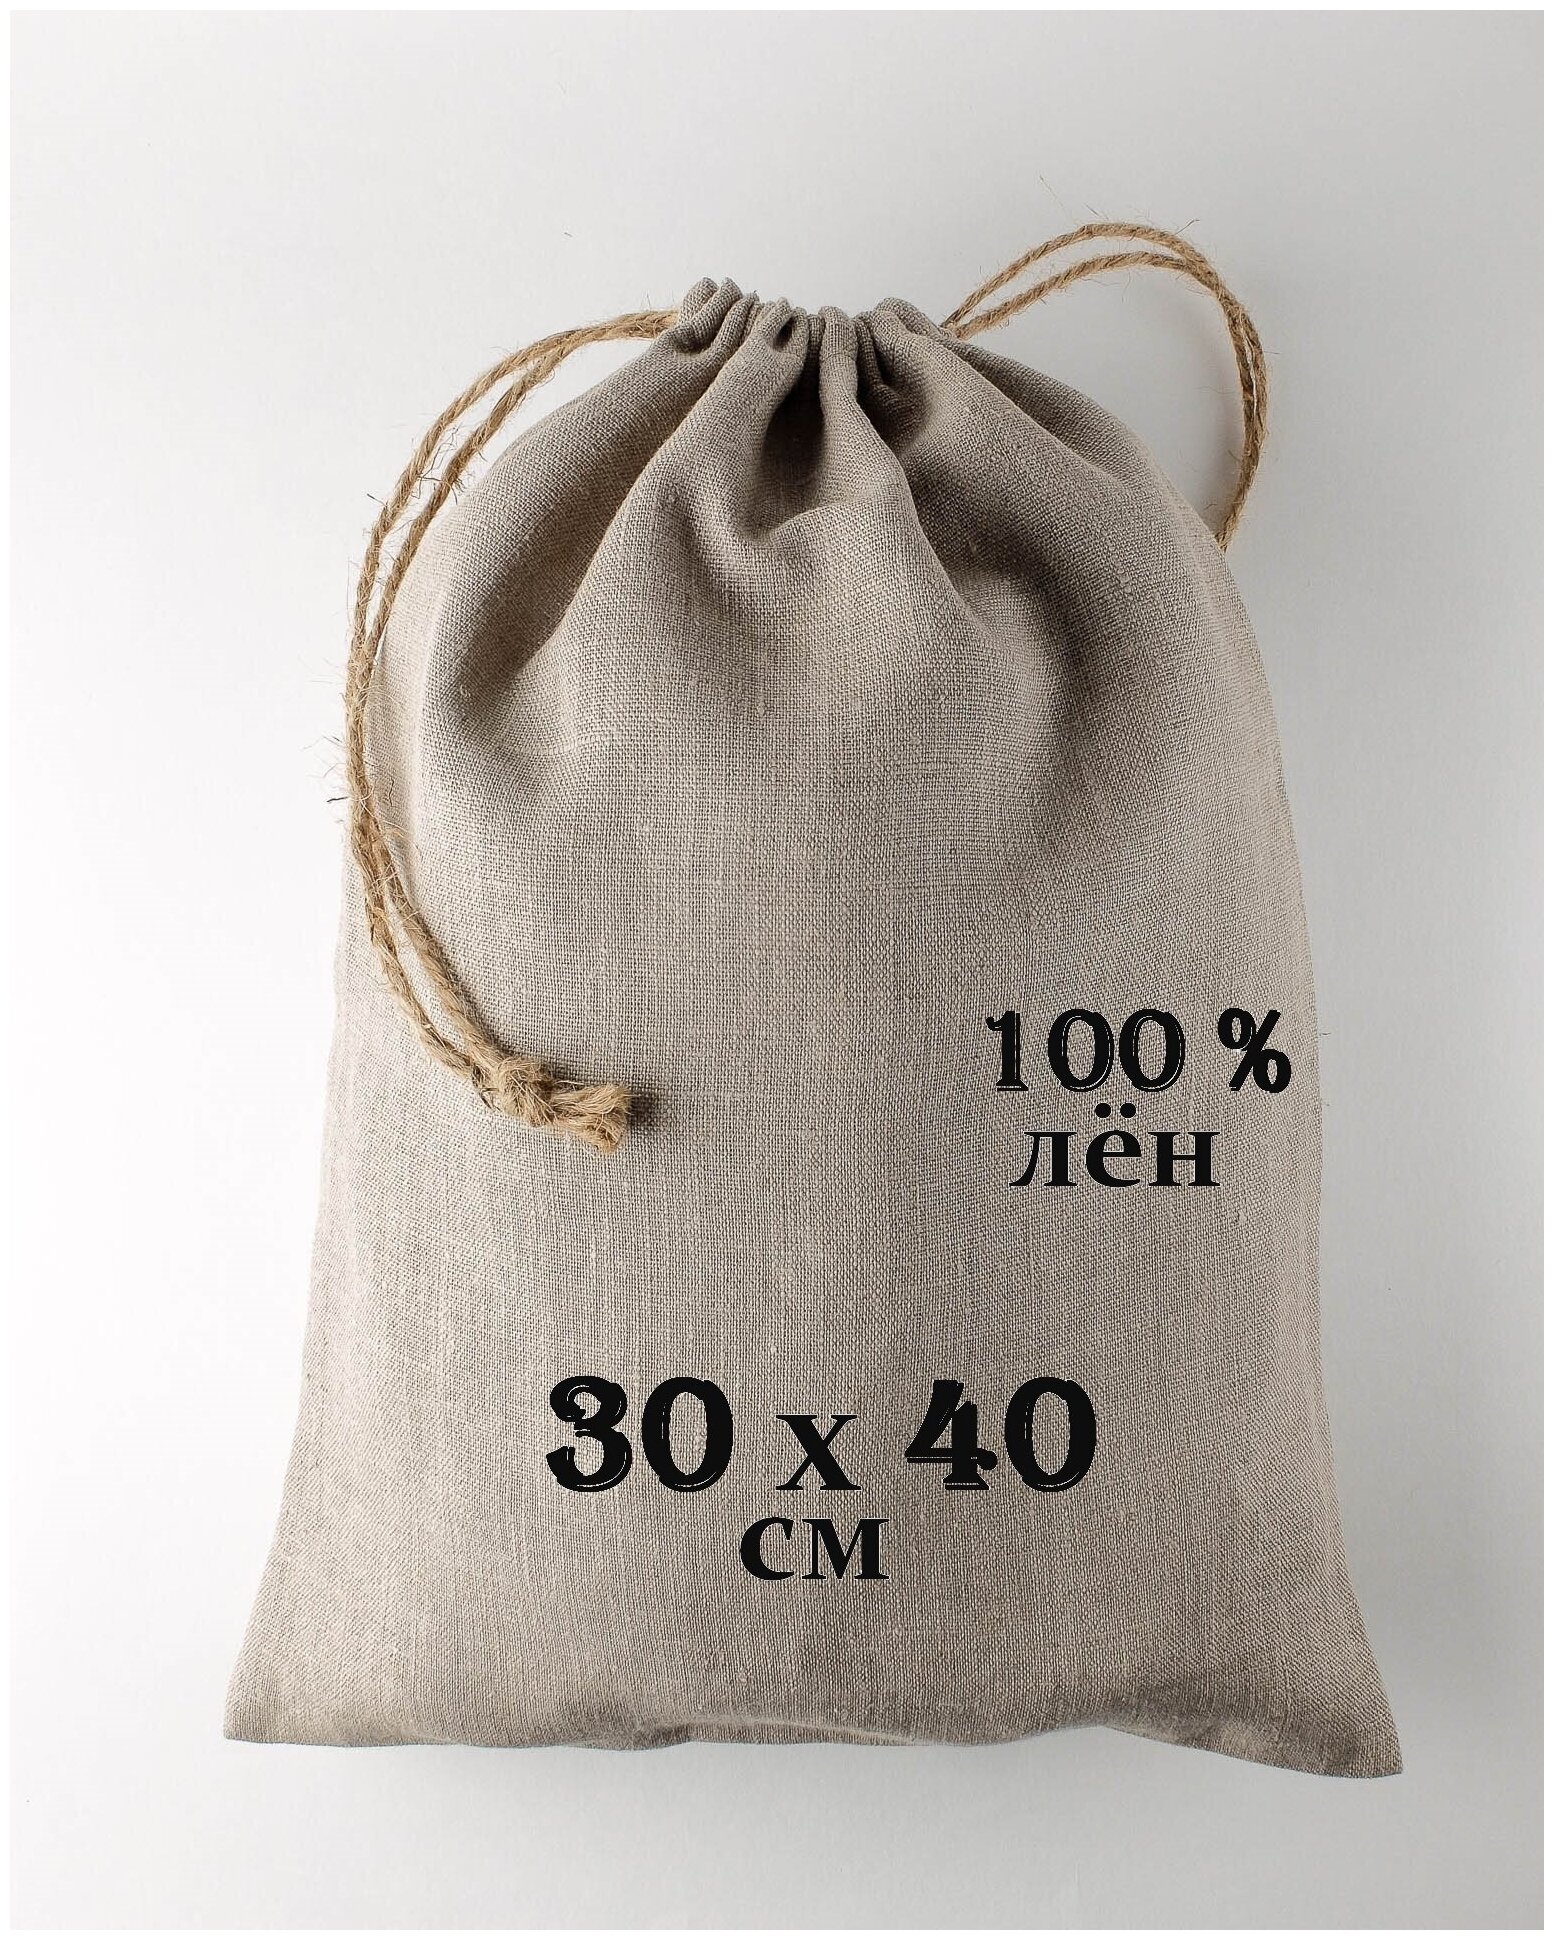 Льняной мешочек "Крепость" с джутовыми завязками 30 на 40 см. / 100% лён / упаковка для подарков и хранения